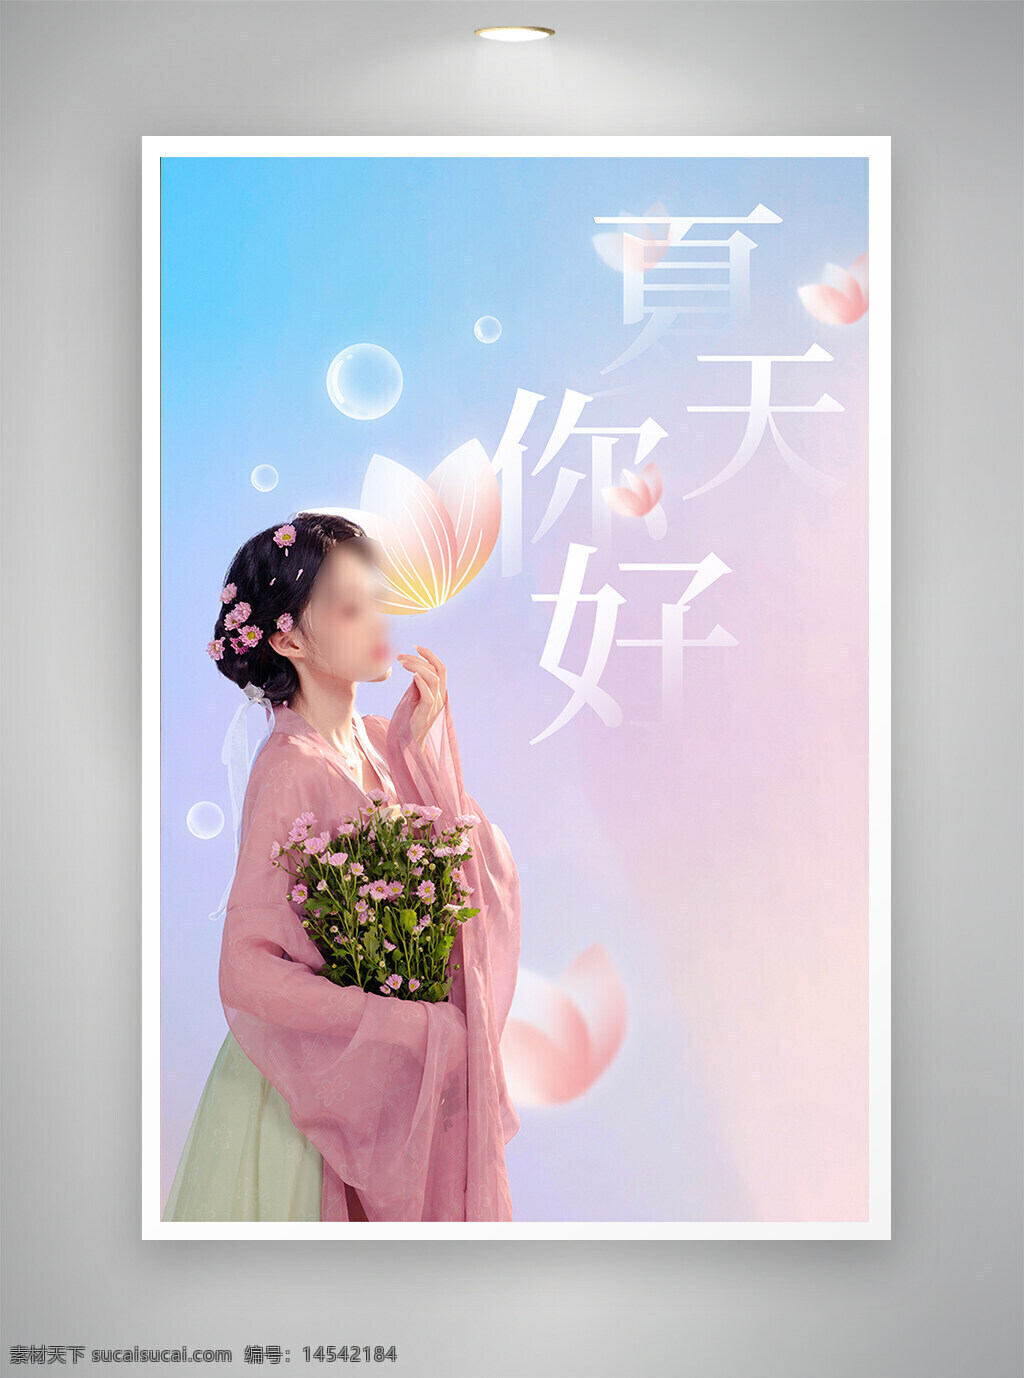 中国风海报 促销海报 古风海报 节日海报 你好夏天